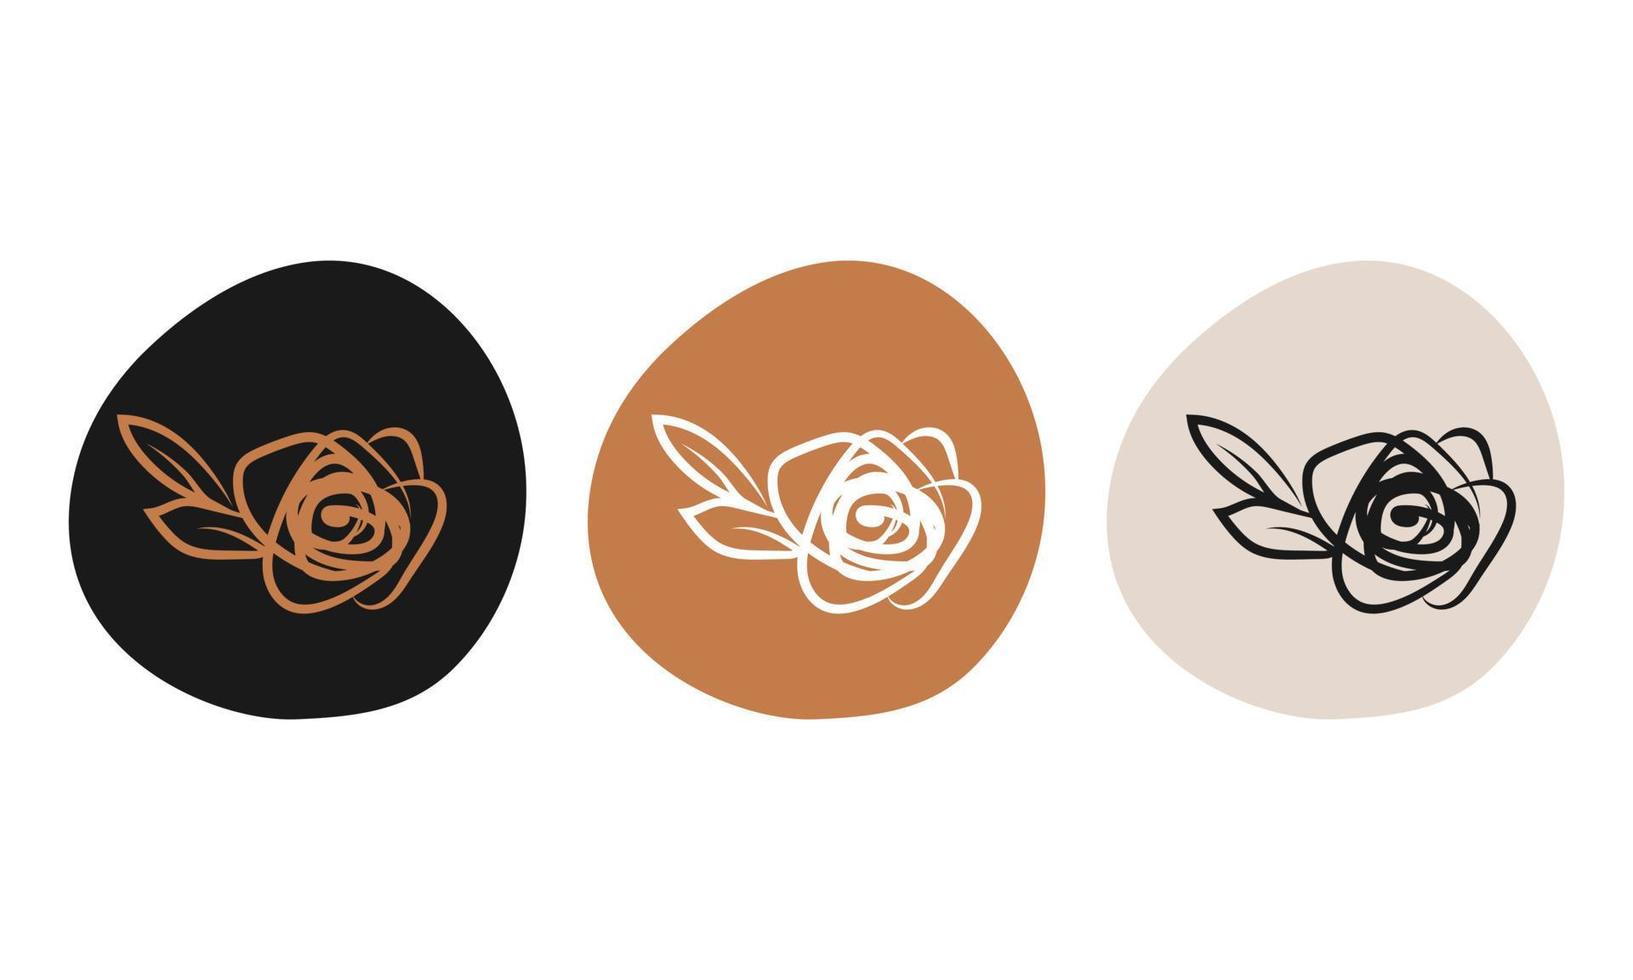 botanische illustration vektor logo design set sammlung luxus logo symbole hebt dekoration floral kräutergekritzel handgezeichnete elemente firmenmarke label